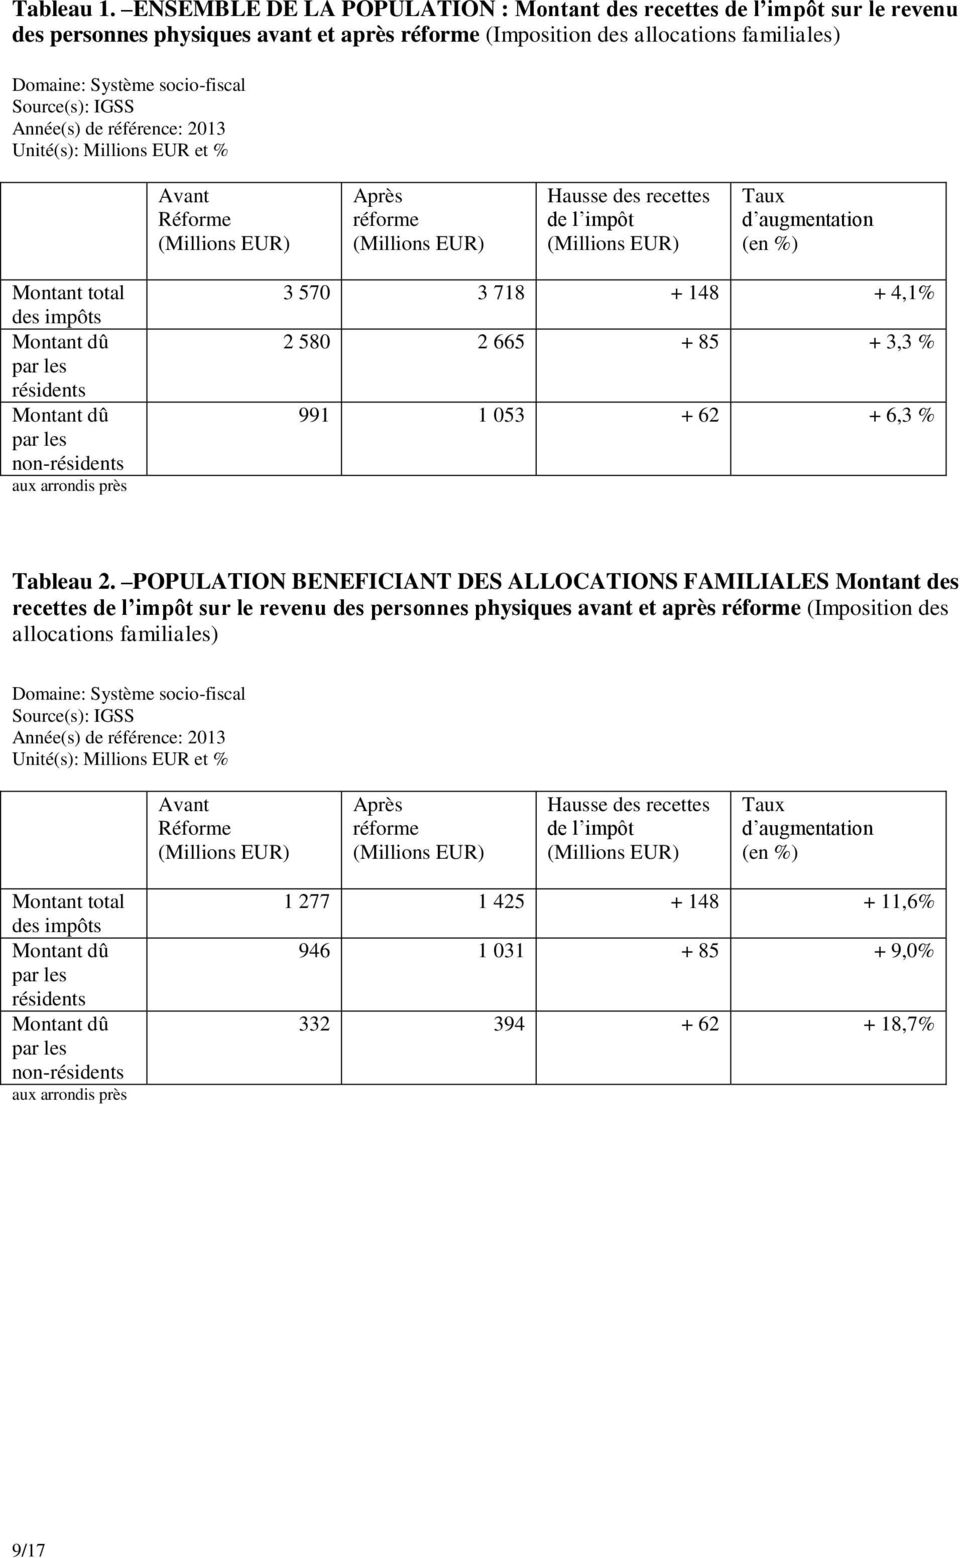 Source(s): IGSS Année(s) de référence: 2013 Unité(s): Millions EUR et % Avant Réforme Après réforme Hausse des recettes de l impôt Taux d augmentation (en %) Montant total des impôts résidents